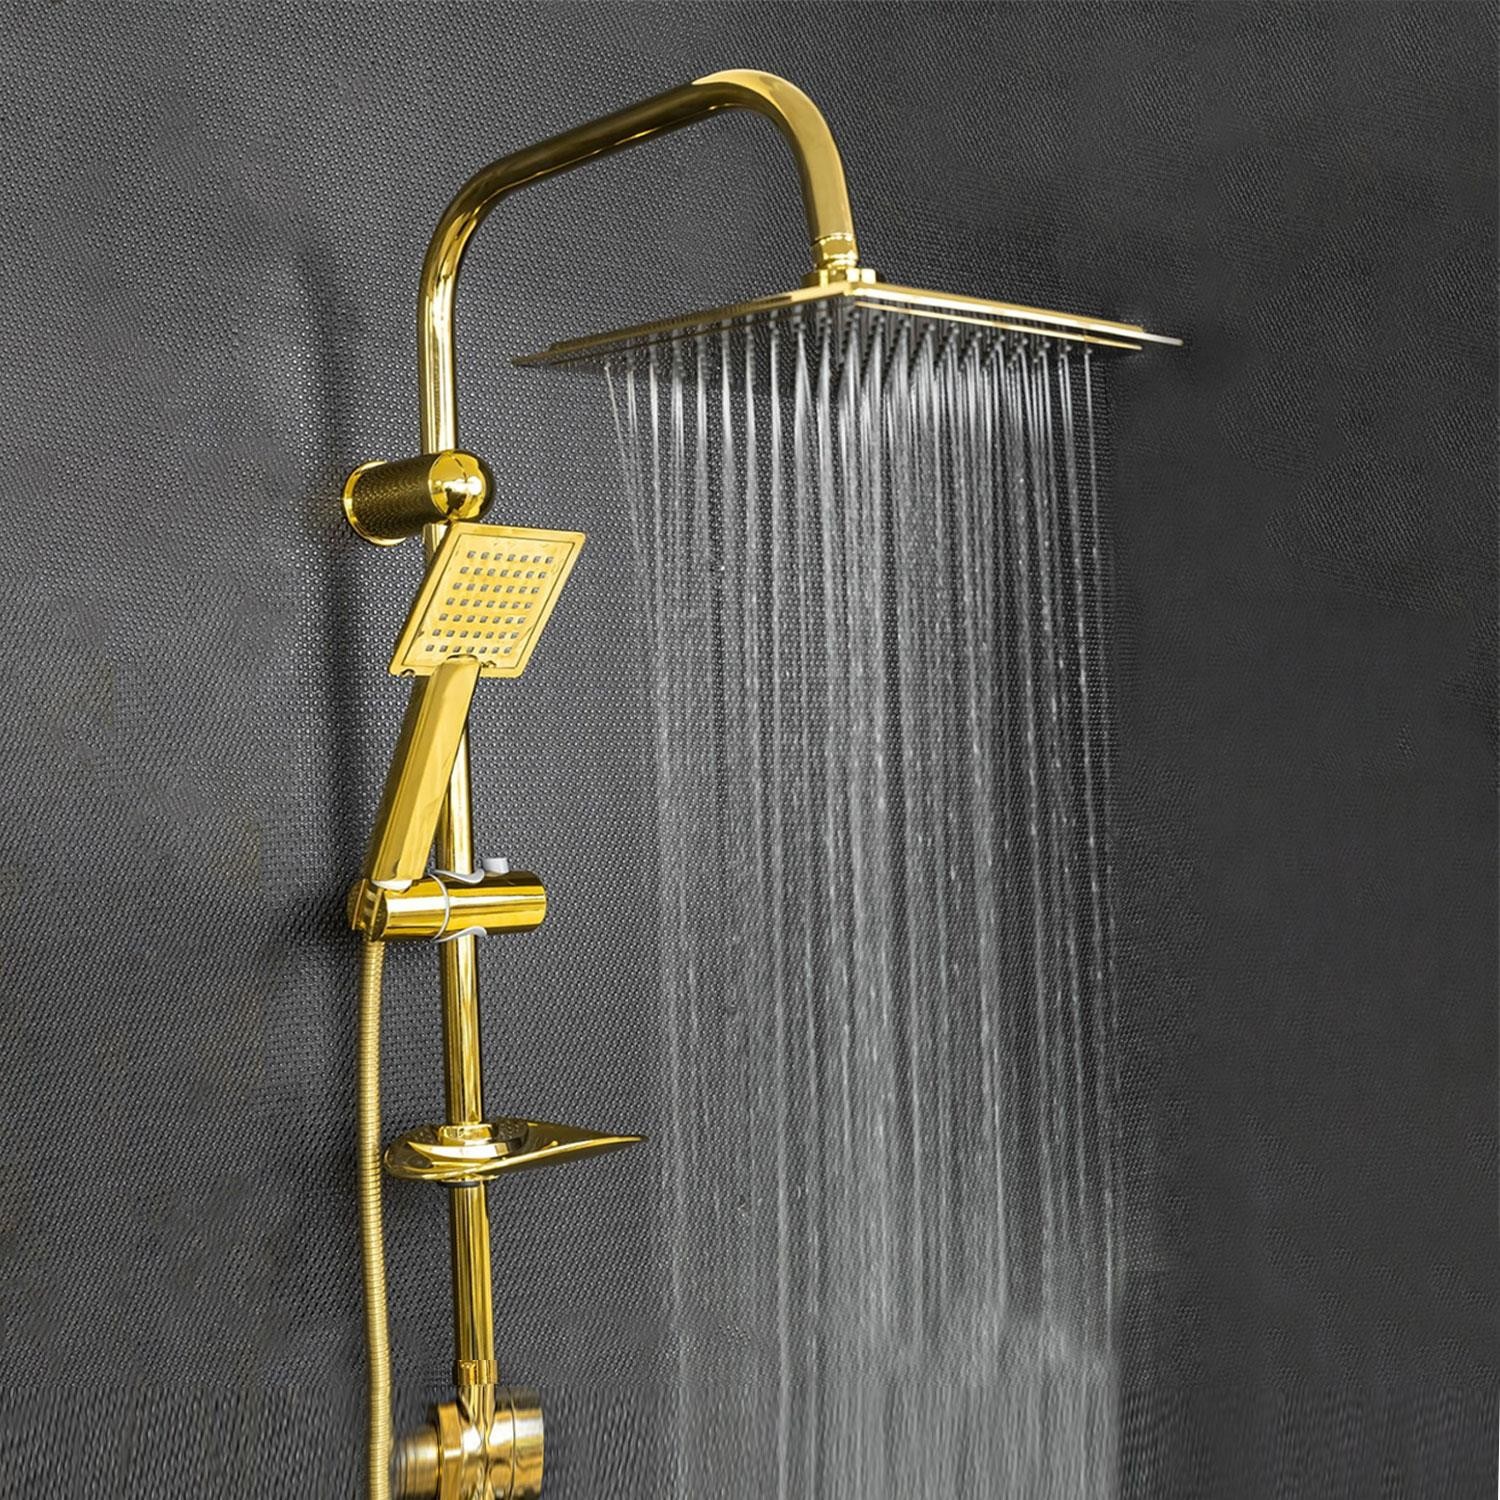 Robot Tepe Duş Seti Takımı Shower Yağmurlama Kare Banyo Masaj Duş Başlığı Sistemi Gold